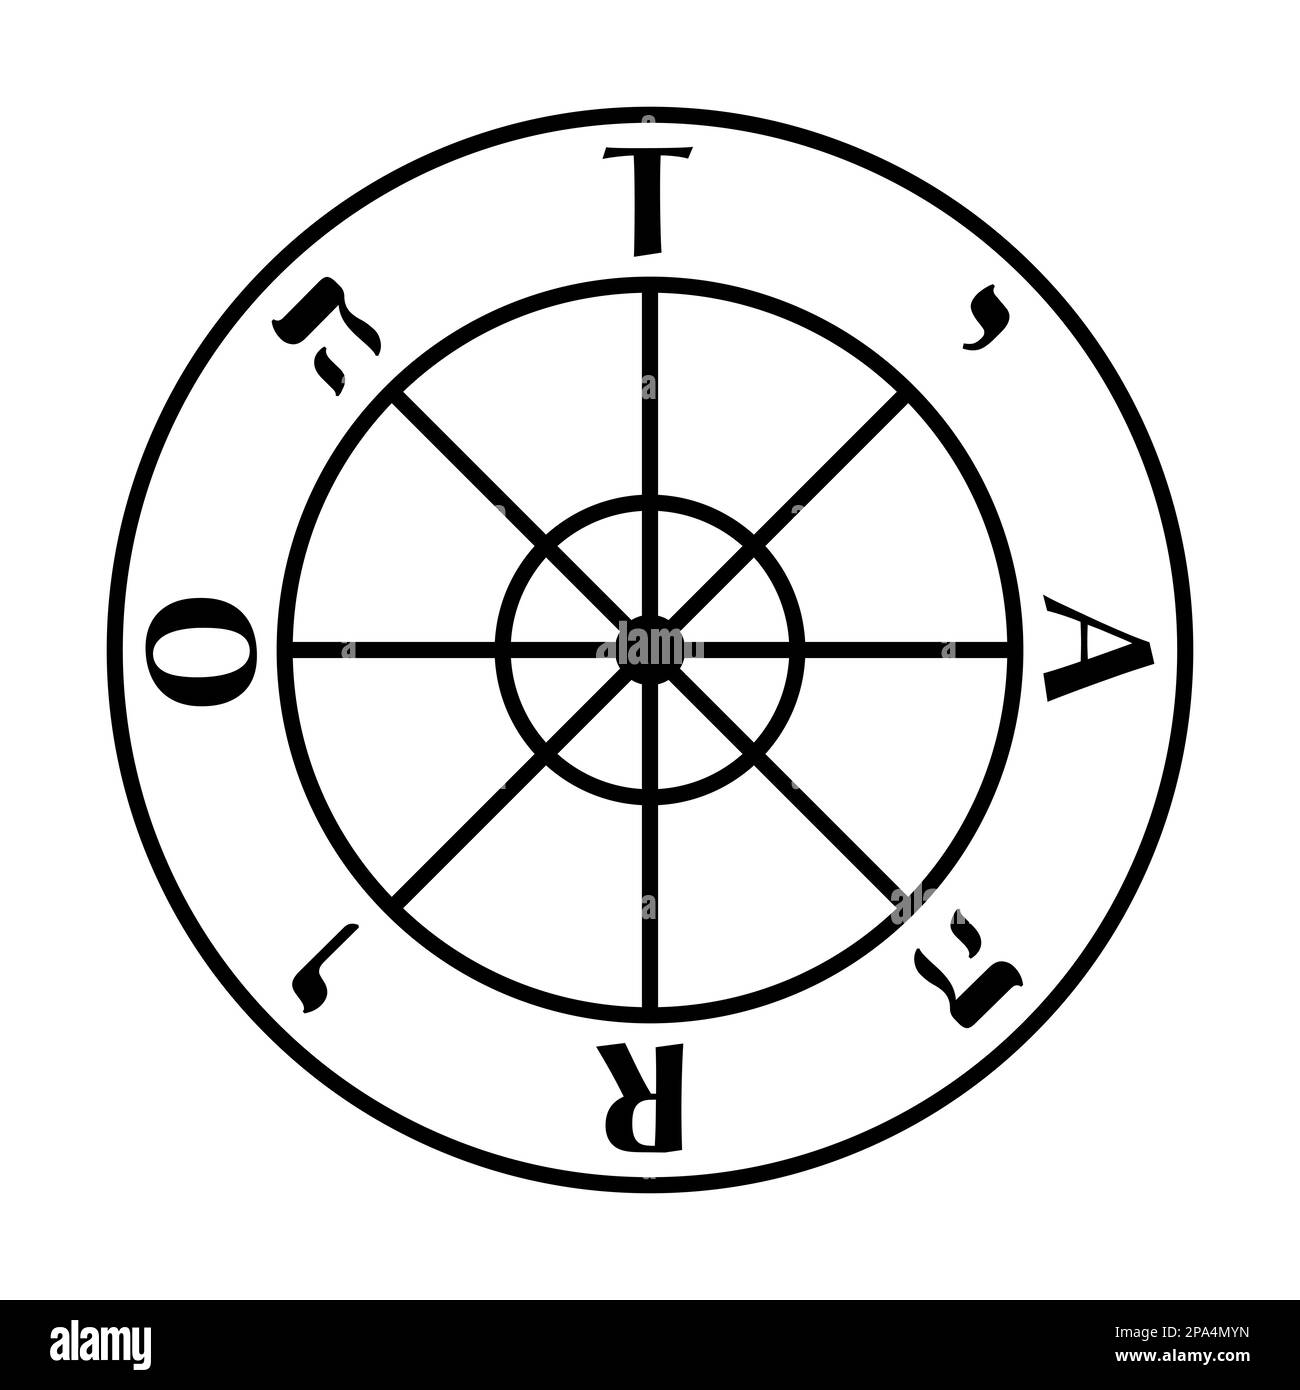 Rueda de la Fortuna, símbolo de la carta del tarot y Arcano Mayor número X. Rueda de carro con 8 radios, en el sentido de las agujas del reloj las letras mayúsculas TARO y Tetragram. Foto de stock